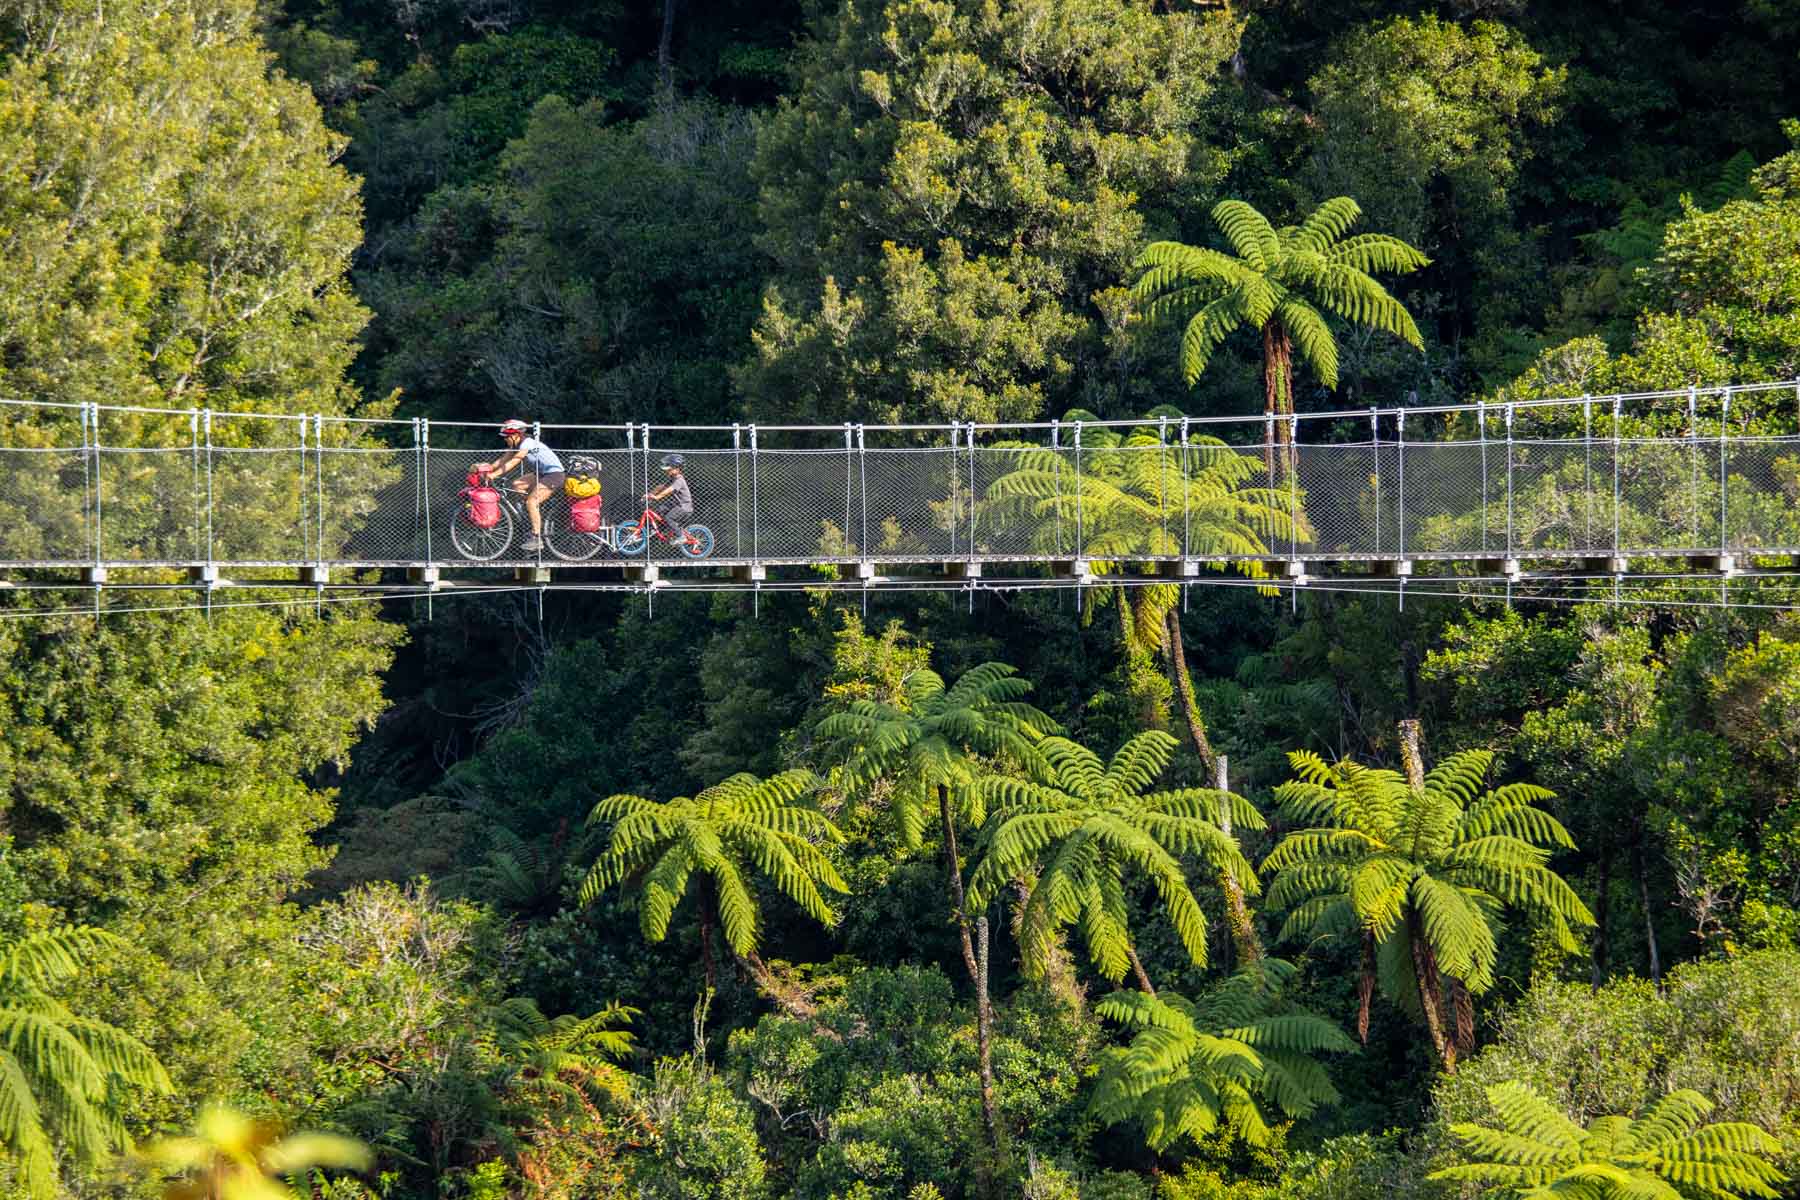 Une femme et son fils roulent à vélo sur un pont suspendu entouré d’une végétation luxuriante.